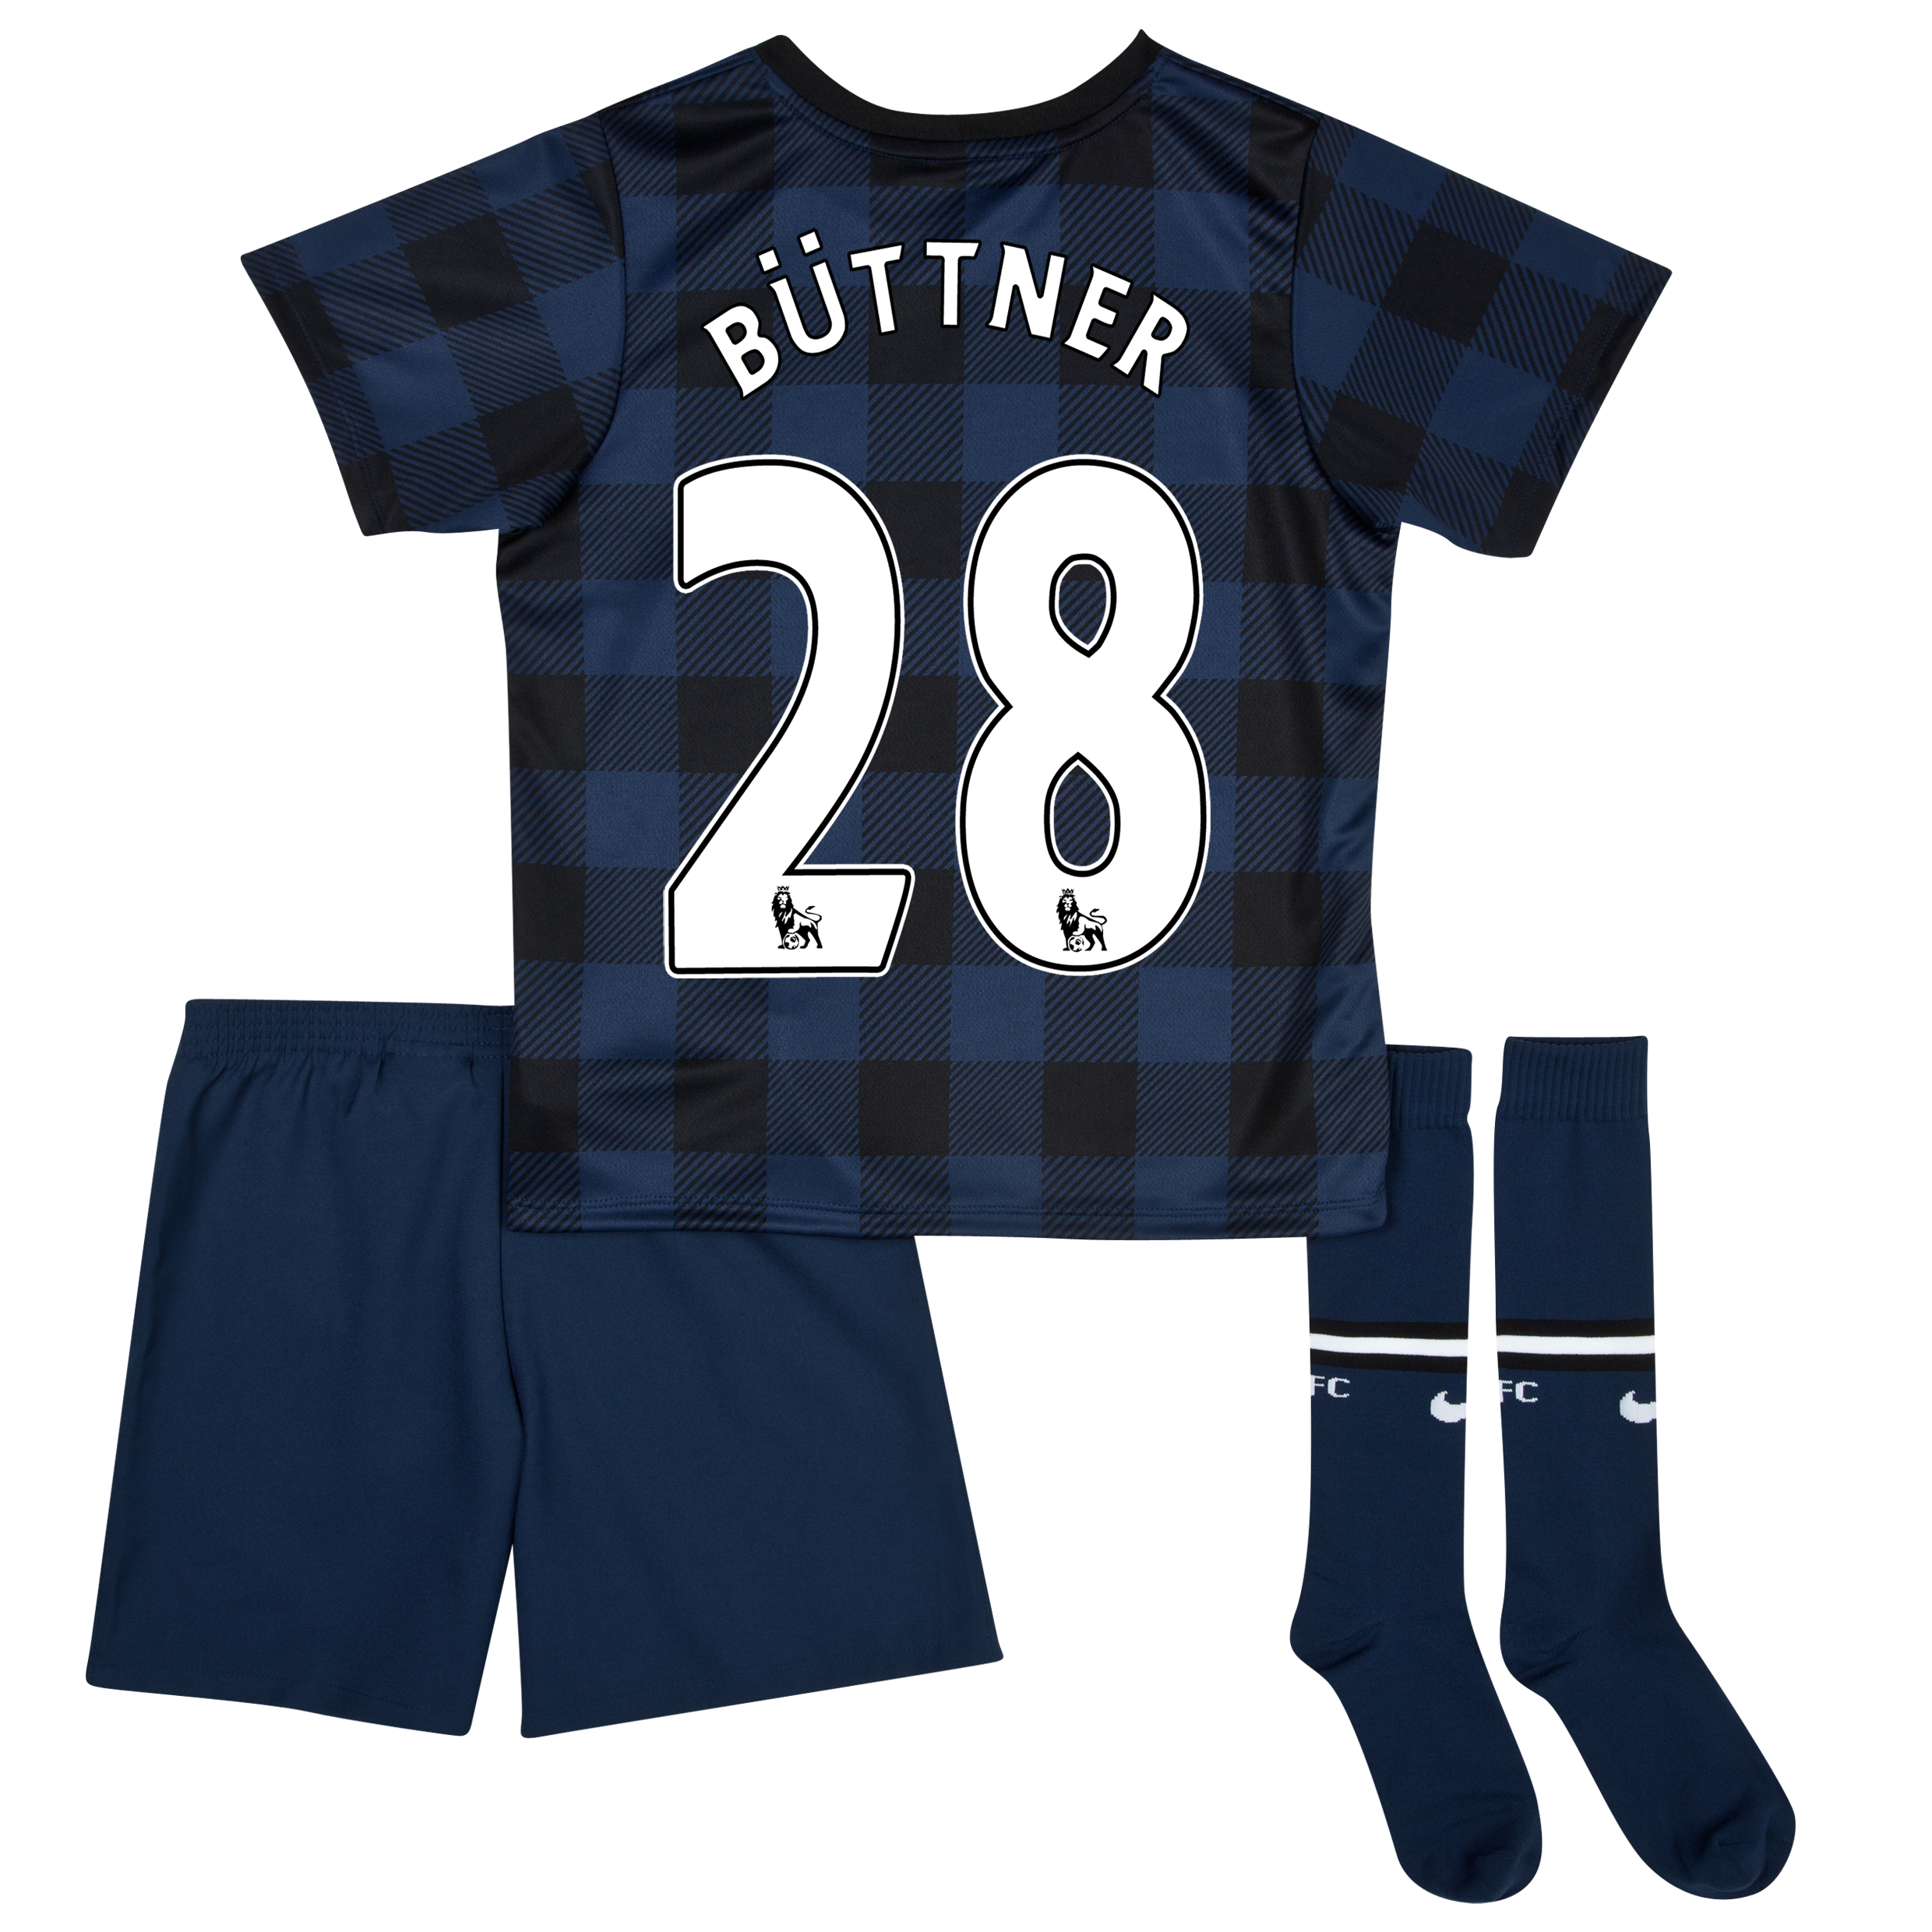 Manchester United Away Kit 2013/14 - Little Boys with Büttner 28 printing